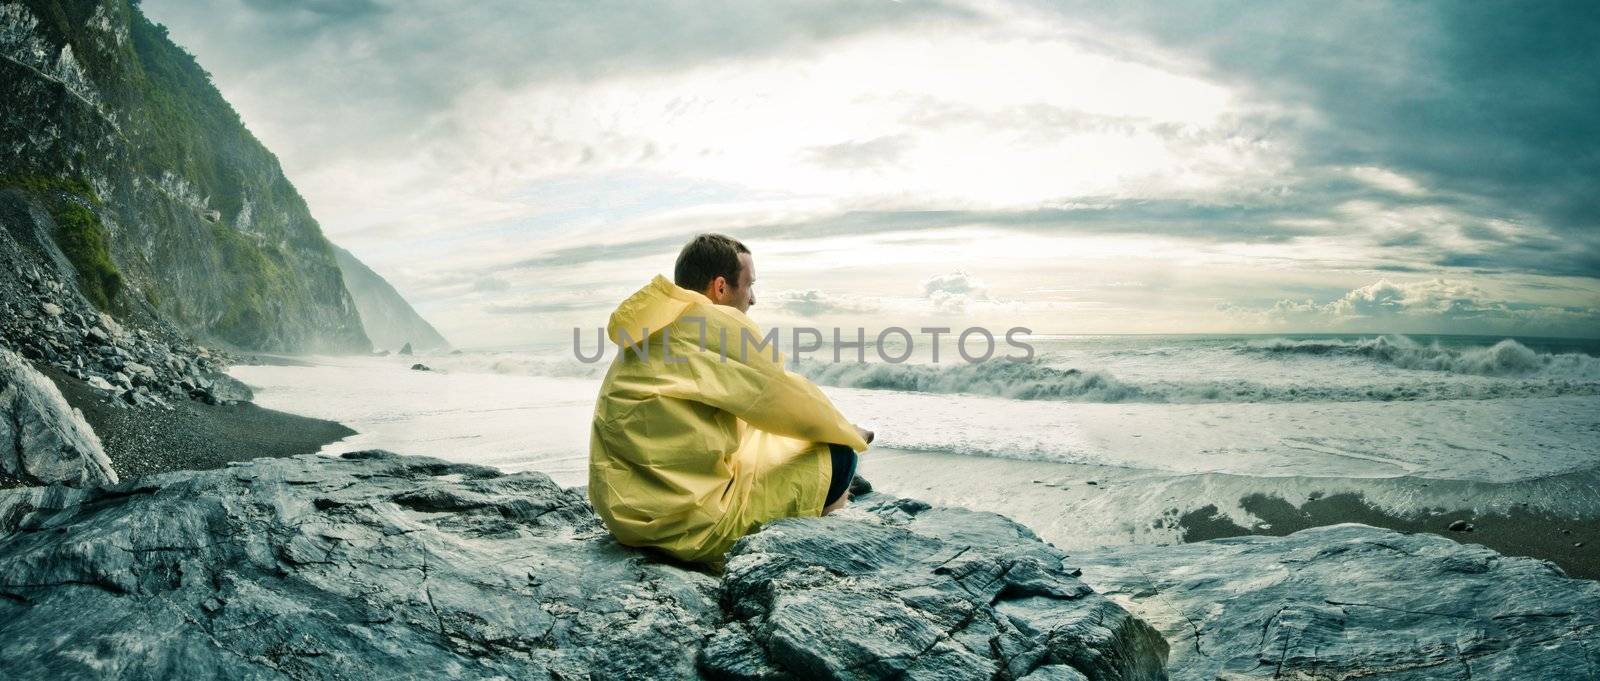 Man watching the ocean by filmstroem